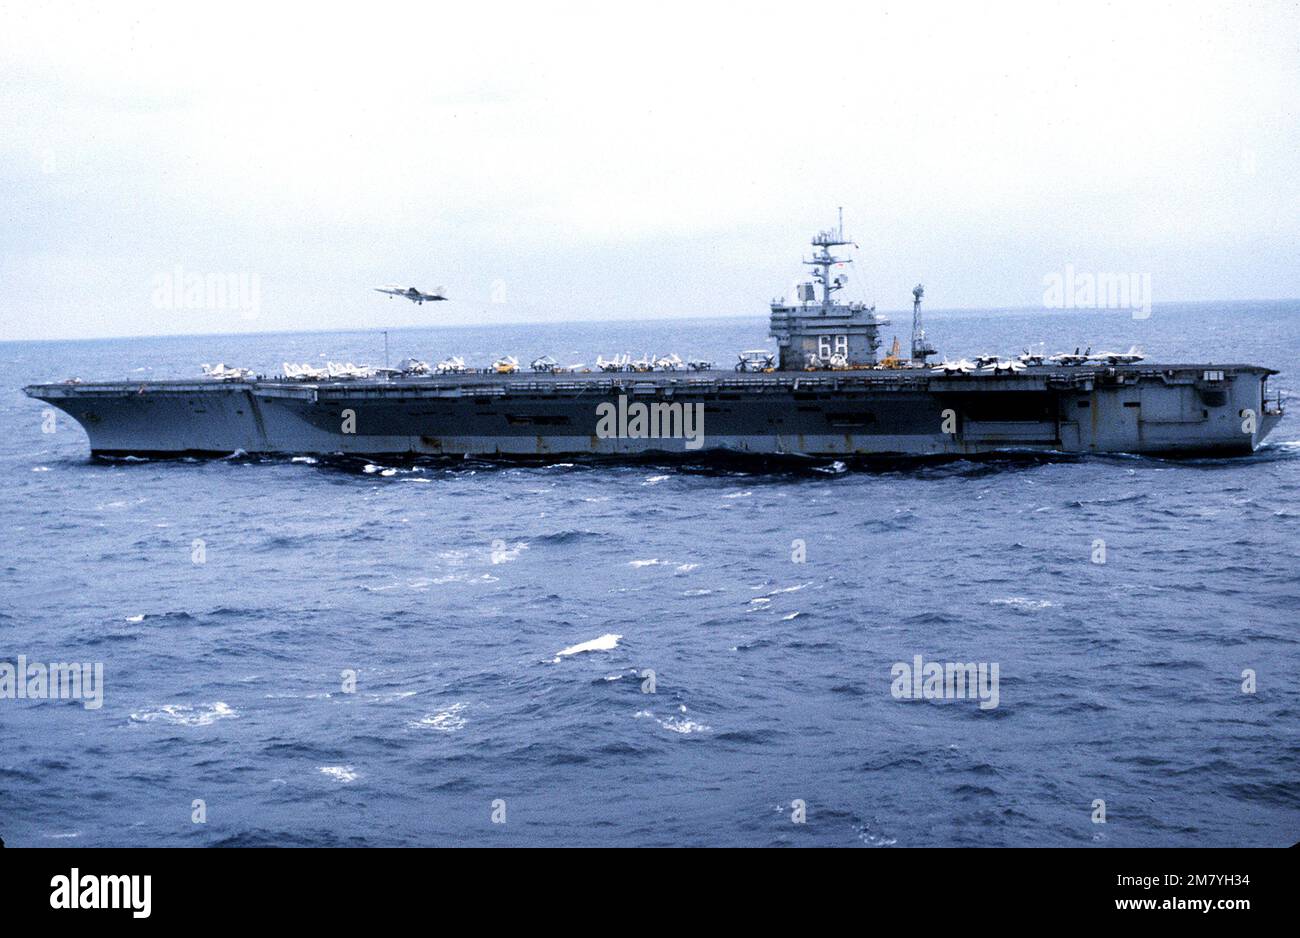 Una vista del haz del puerto del portaaviones propulsión USS NIMITZ (CVN-68) en marcha. Un avión F-14 Tomcat está en vuelo por encima de la aerolínea. País: Mar Mediterráneo (MED